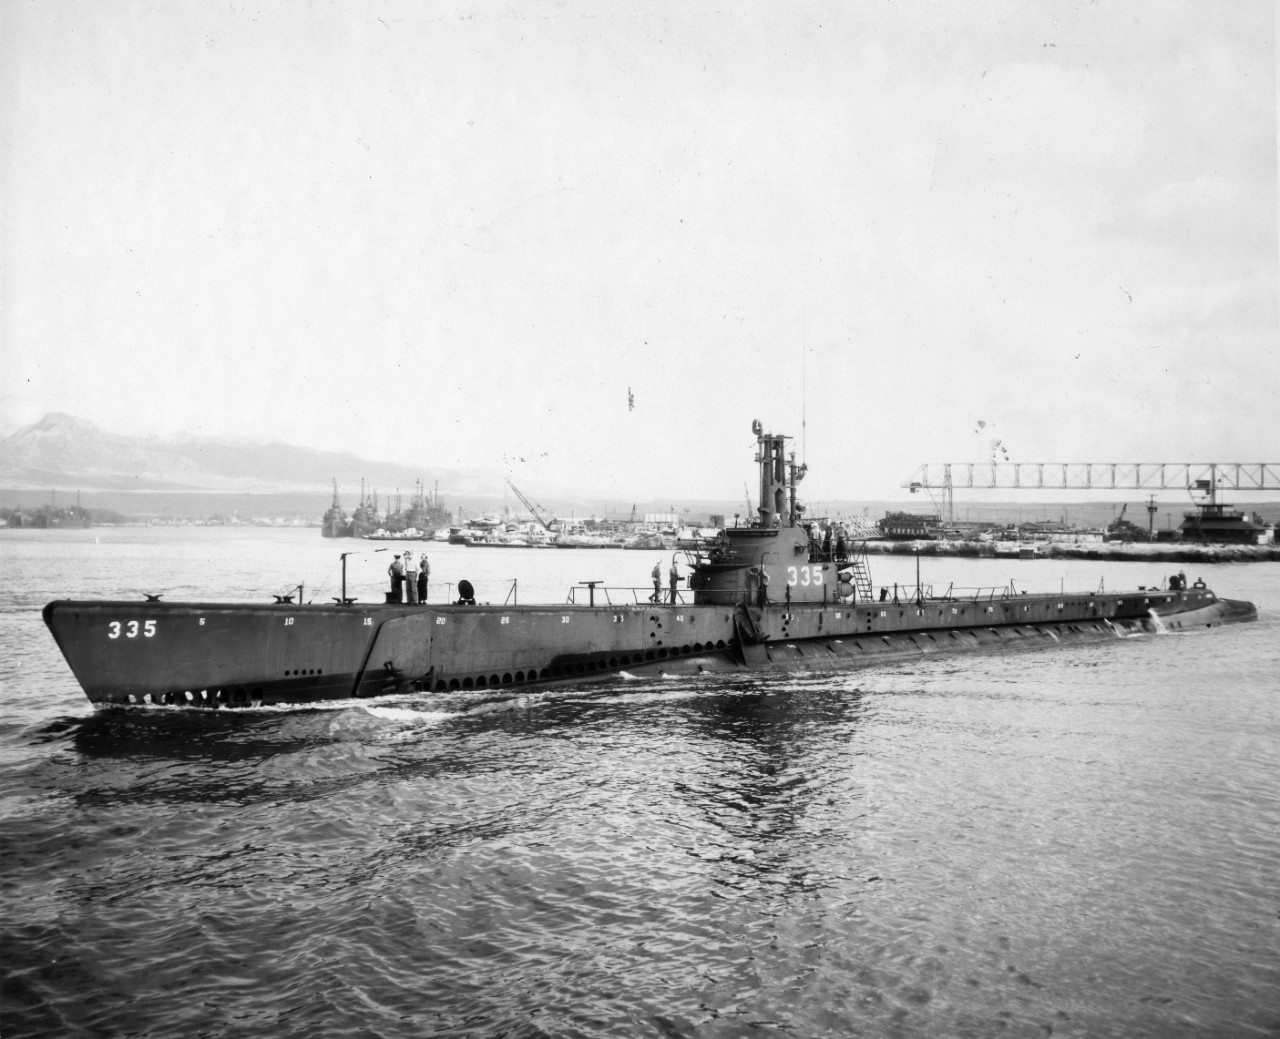 USS Dentuda (SS-335)